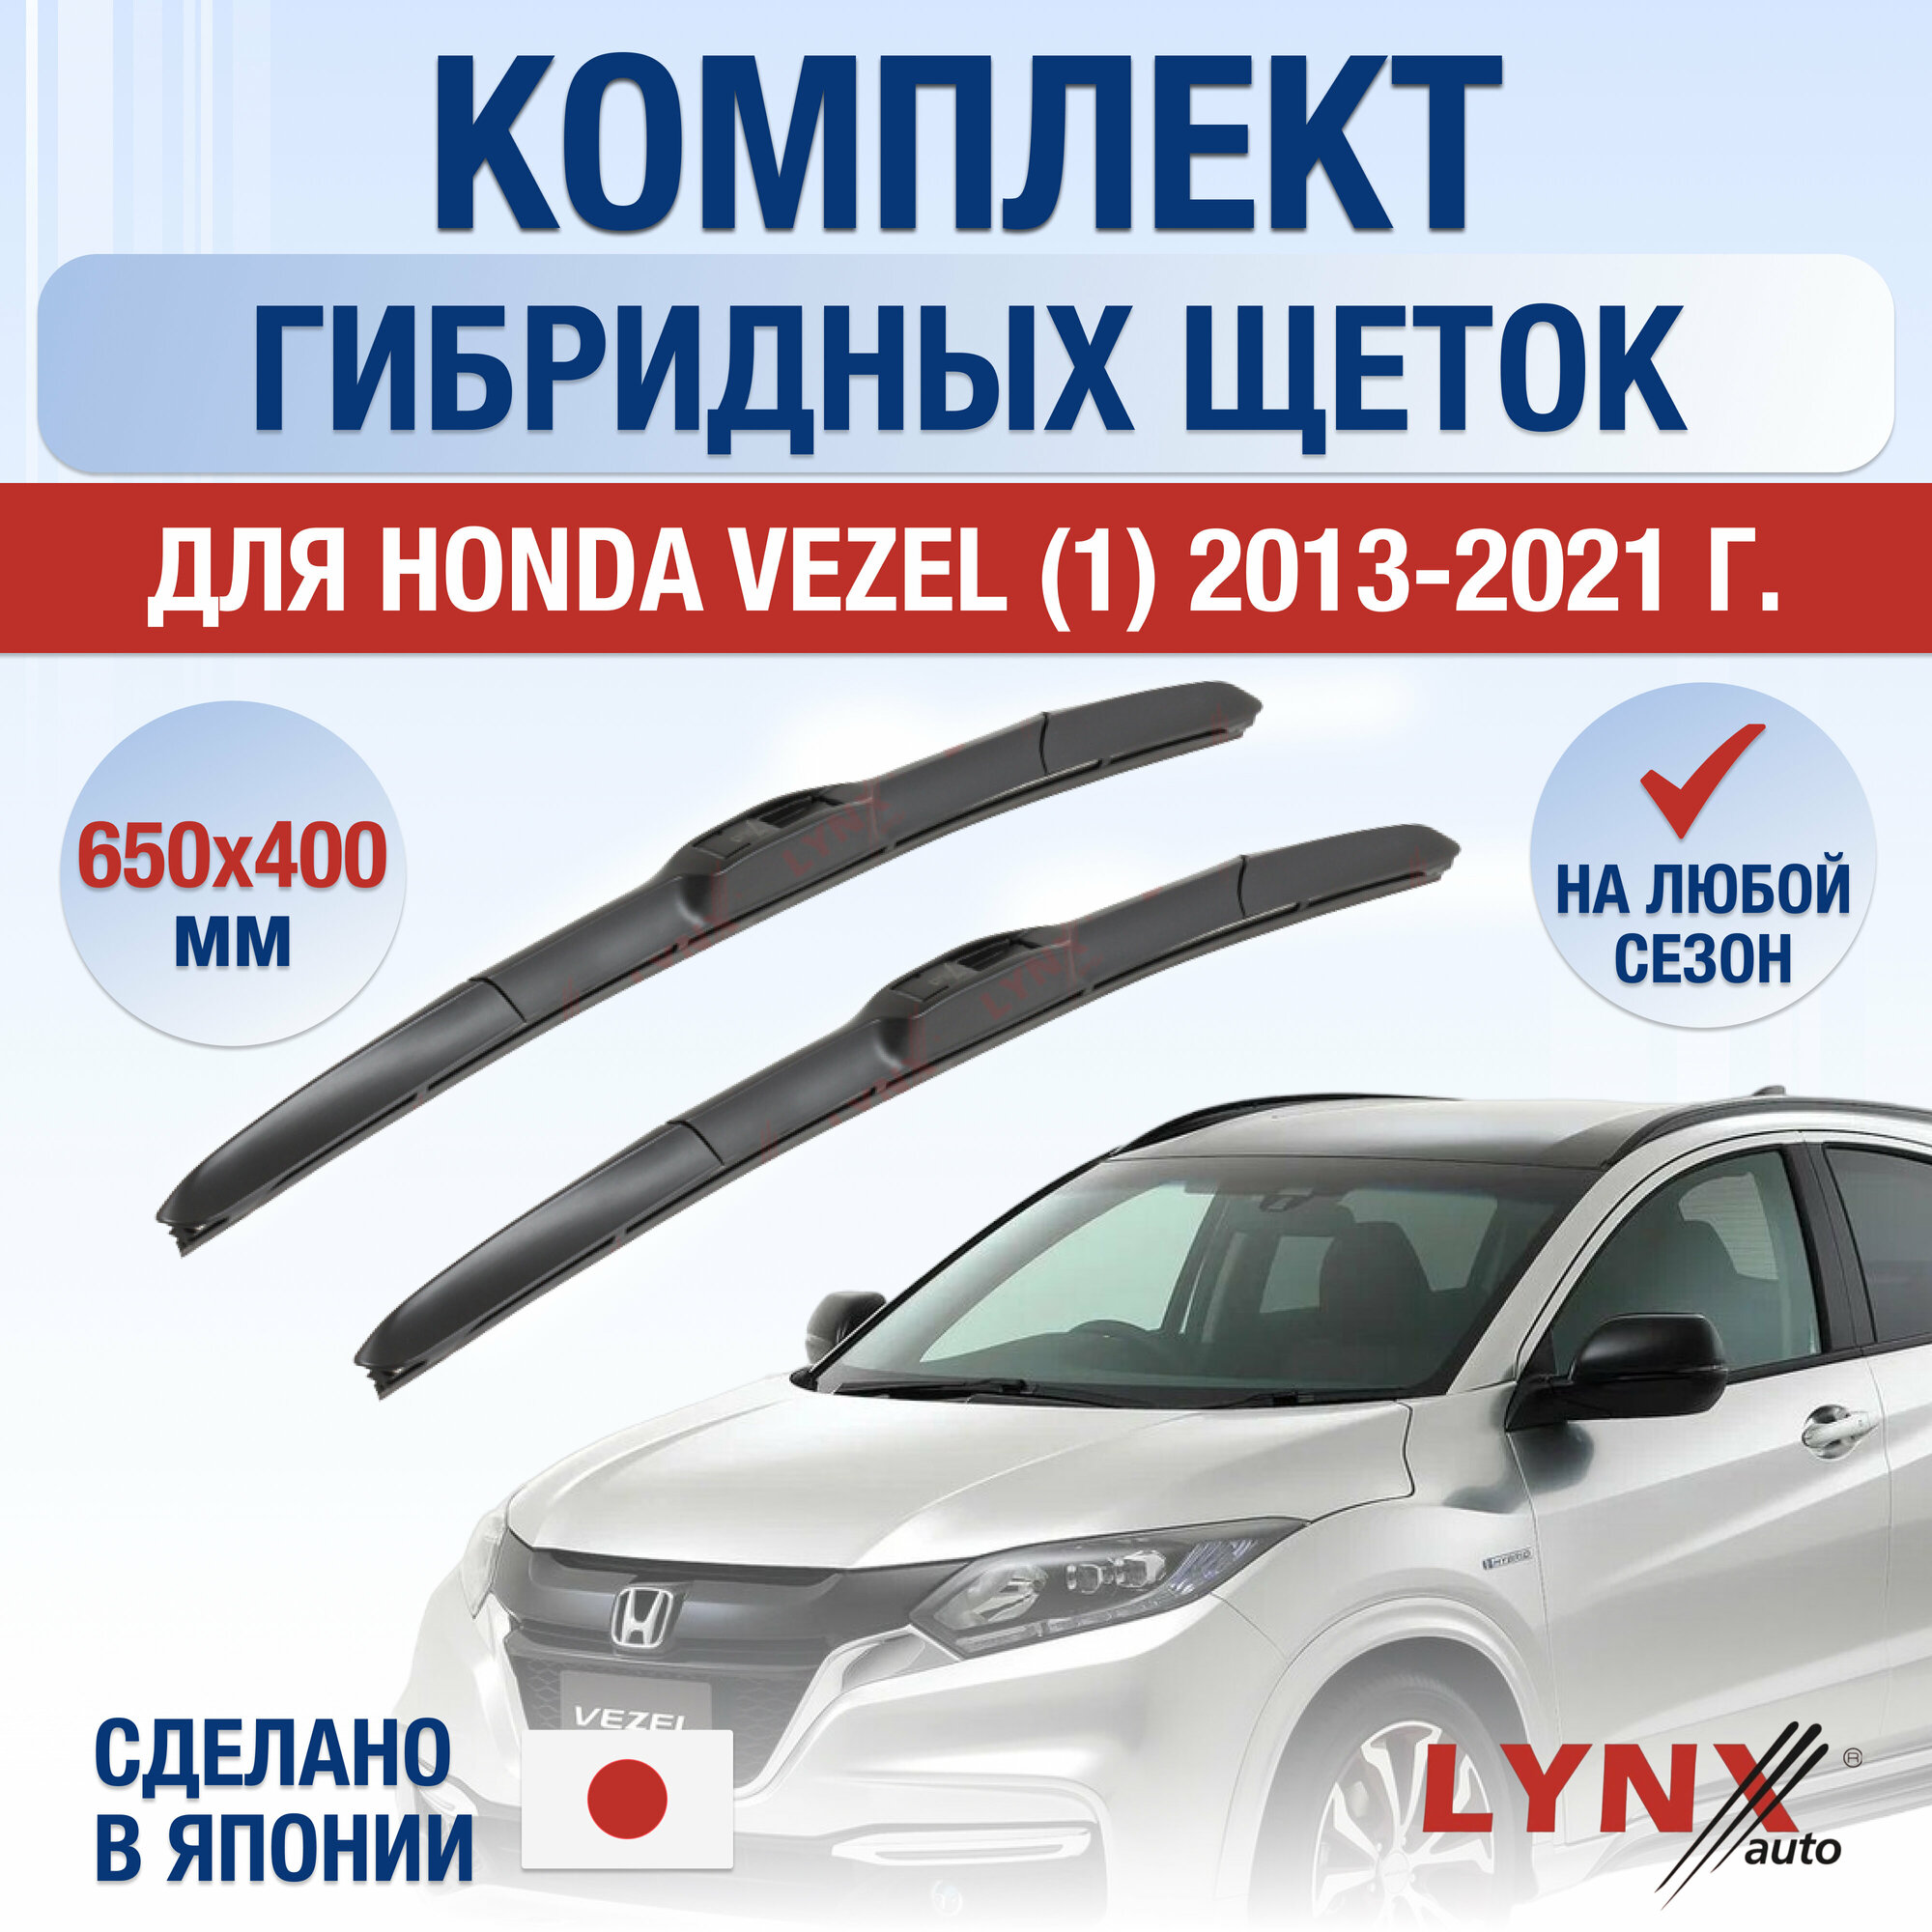 Щетки стеклоочистителя для Honda Vezel (1) / 2013 2014 2015 2016 2017 2018 2019 2020 2021 / Комплект гибридных дворников 650 400 мм Хонда Везел